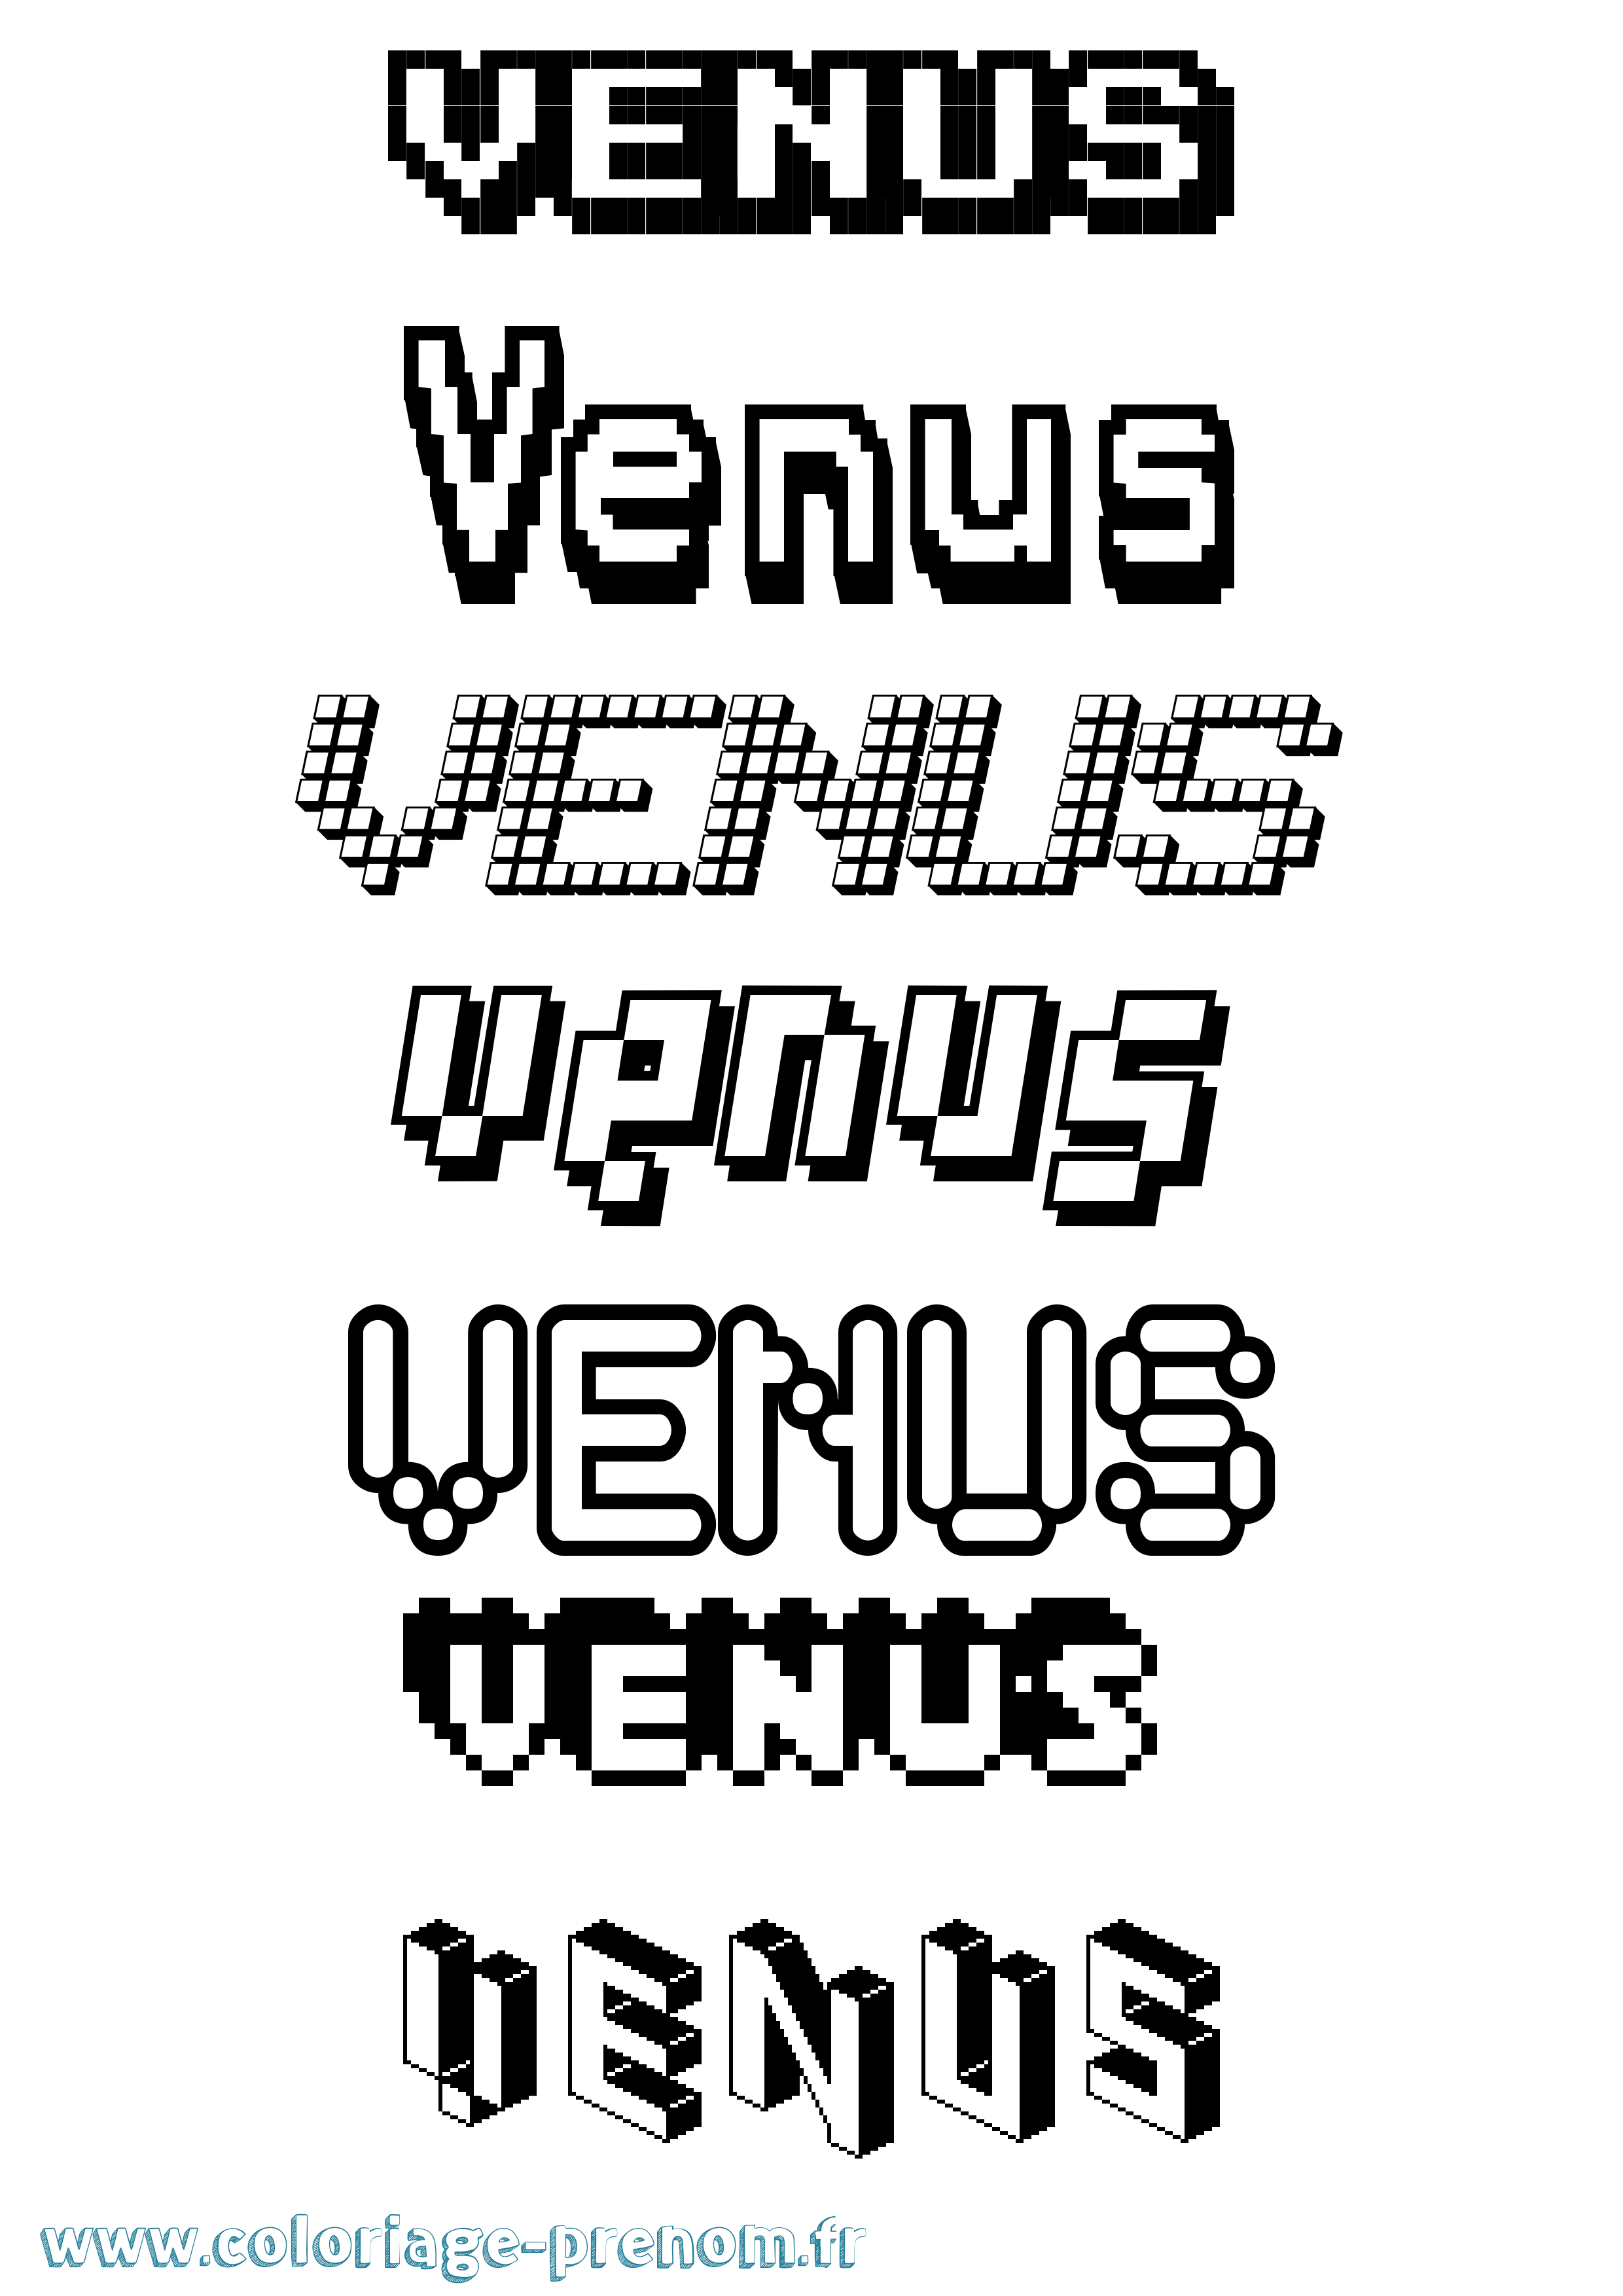 Coloriage prénom Venus Pixel